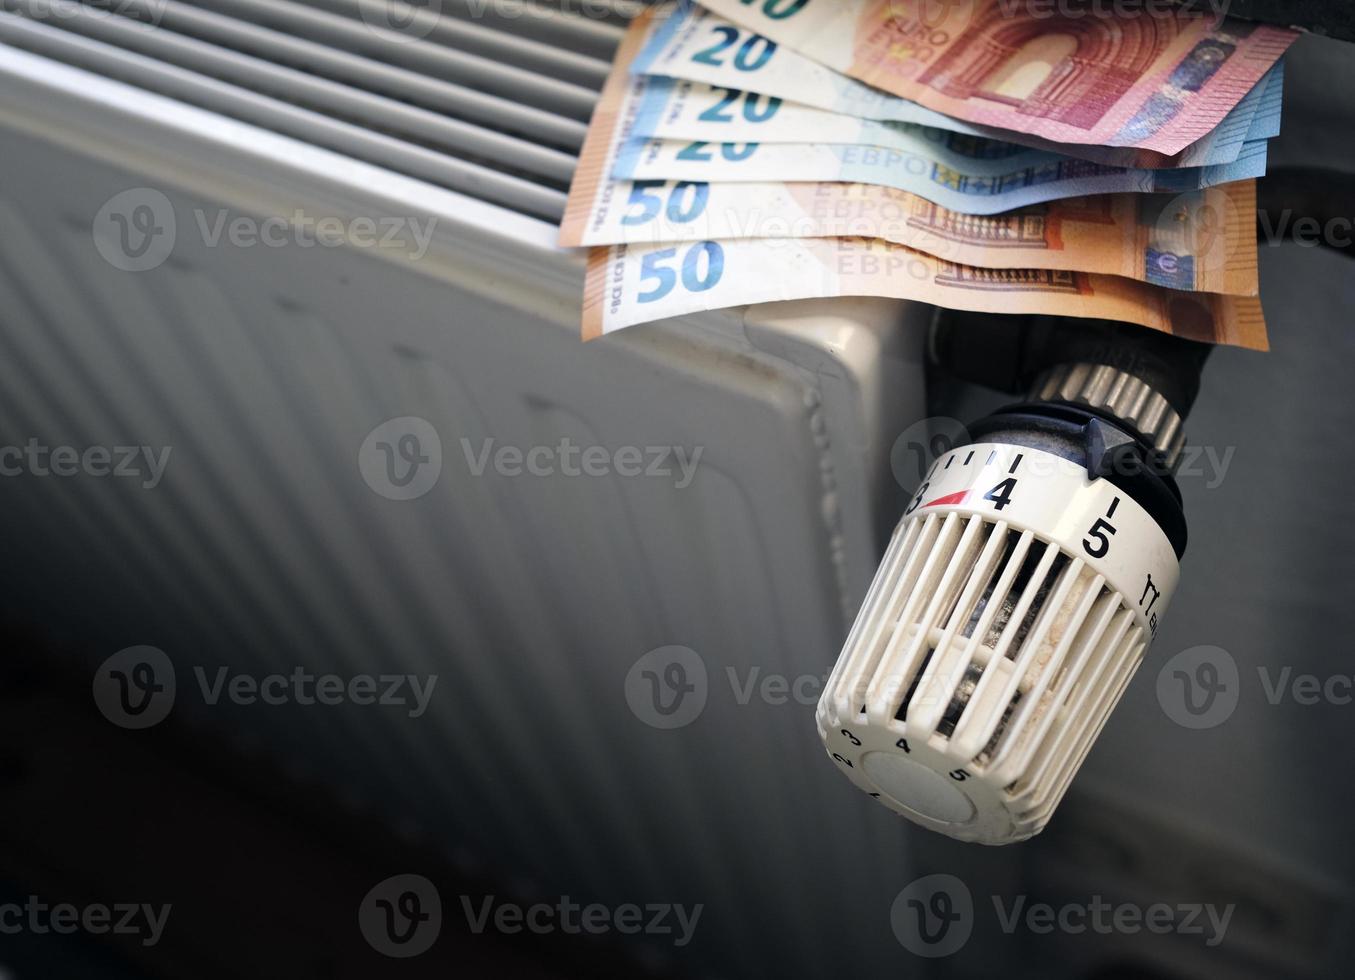 contrôler les coûts de chauffage - contrôle des radiateurs et factures en euros sur le chauffage central photo